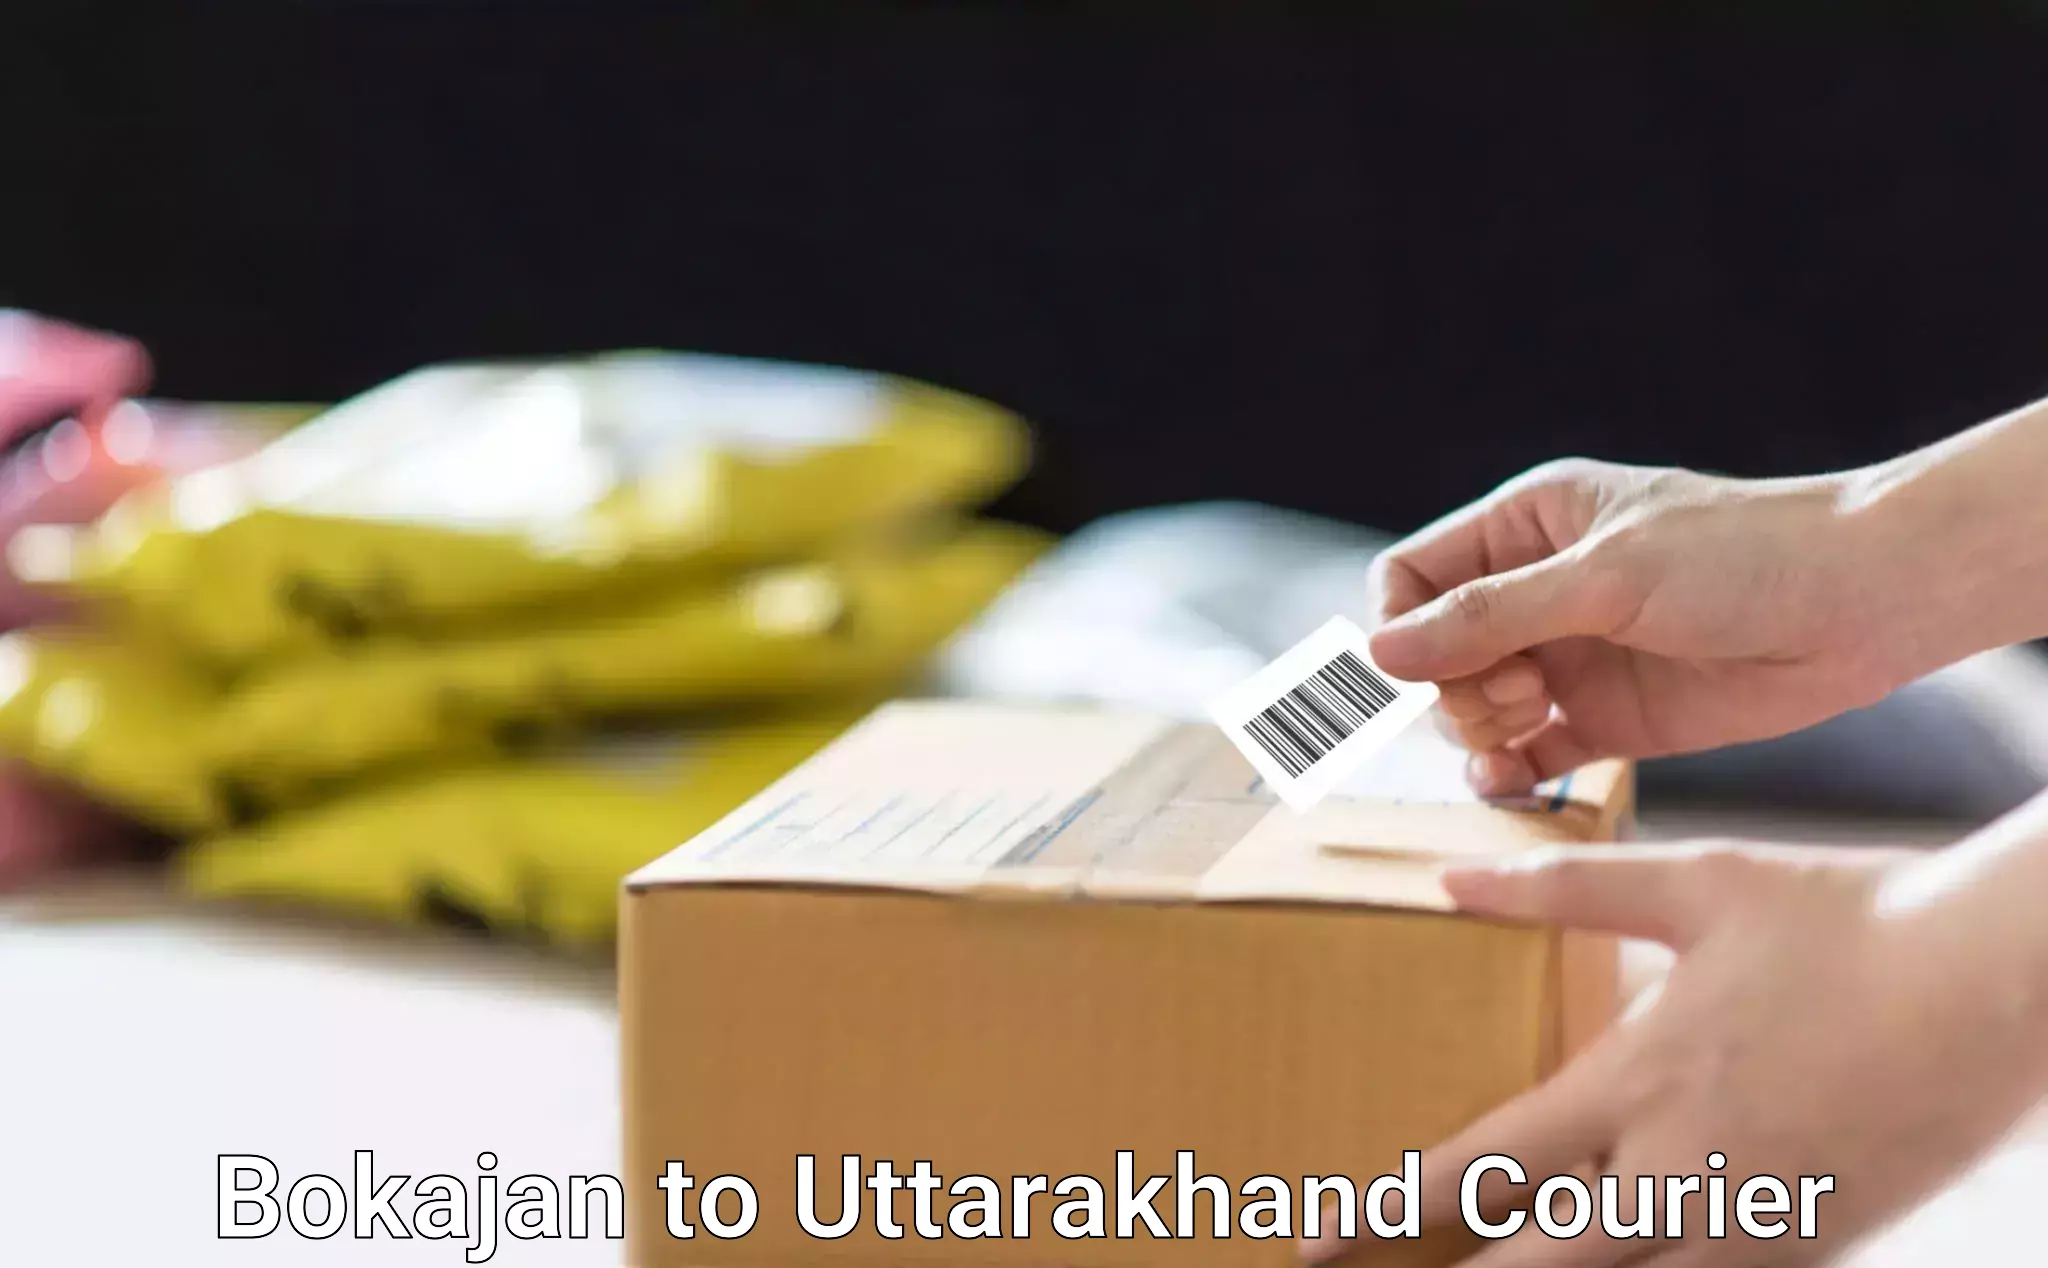 24-hour delivery options in Bokajan to Uttarakhand